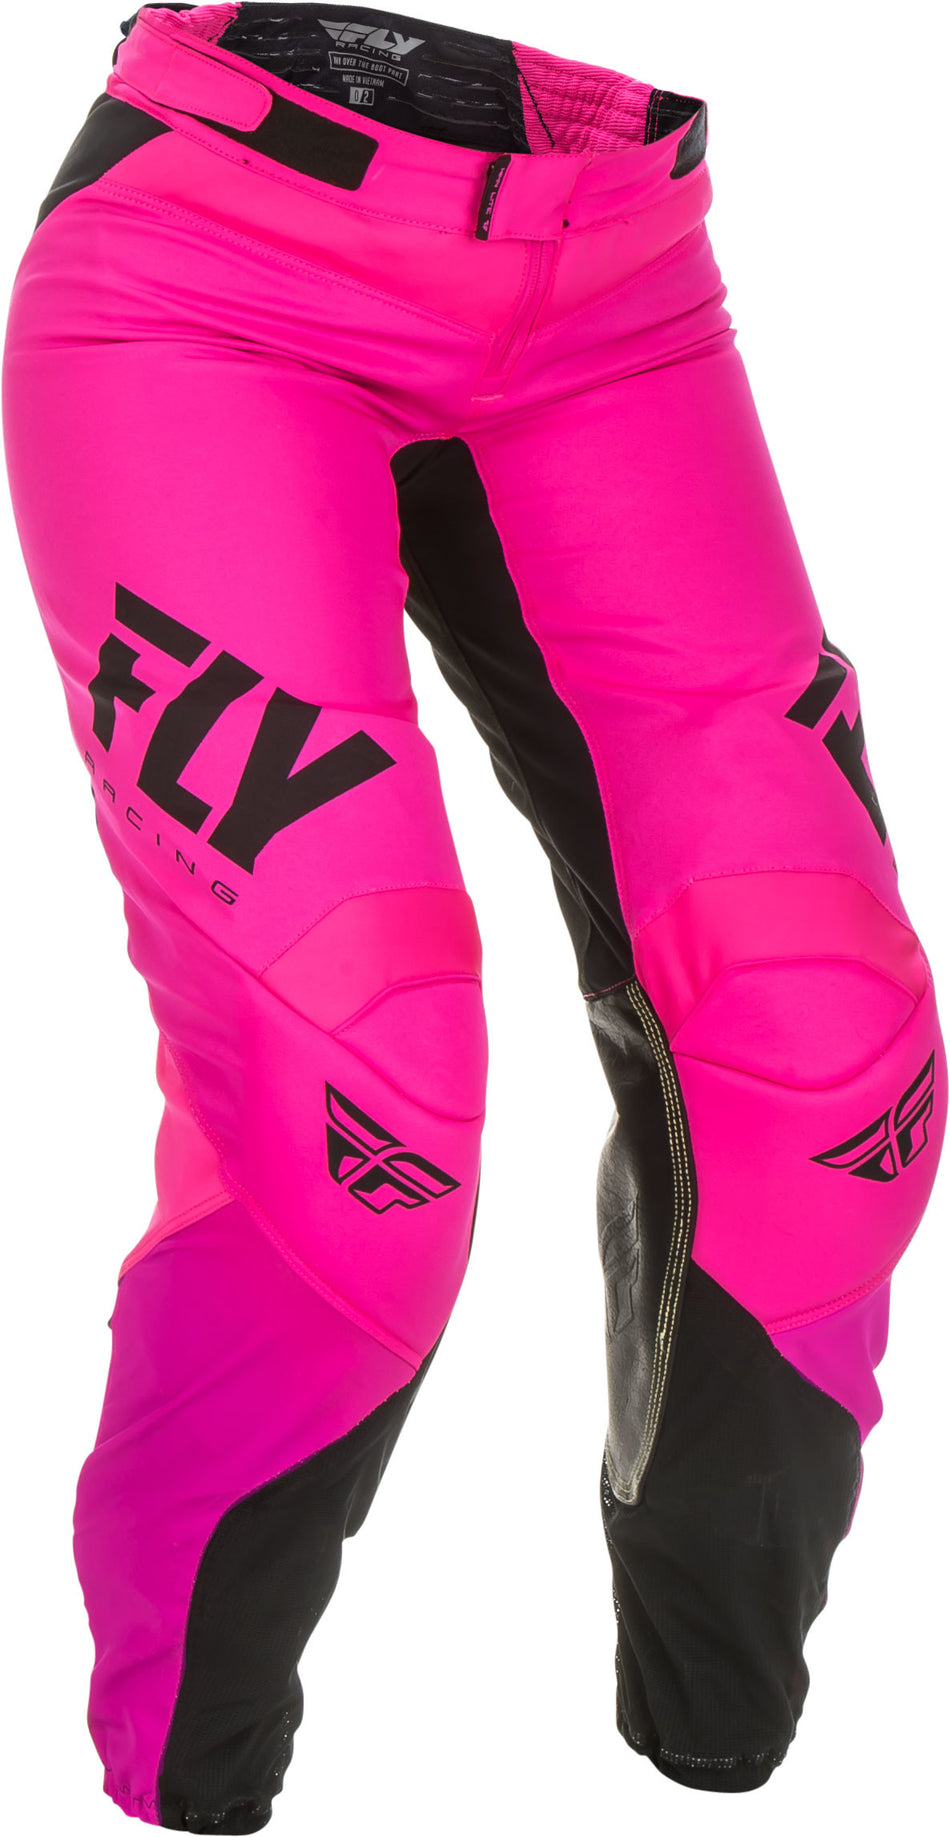 FLY RACING Women's Lite Race Pants Neon Pink/Black Sz 11/12 372-63809